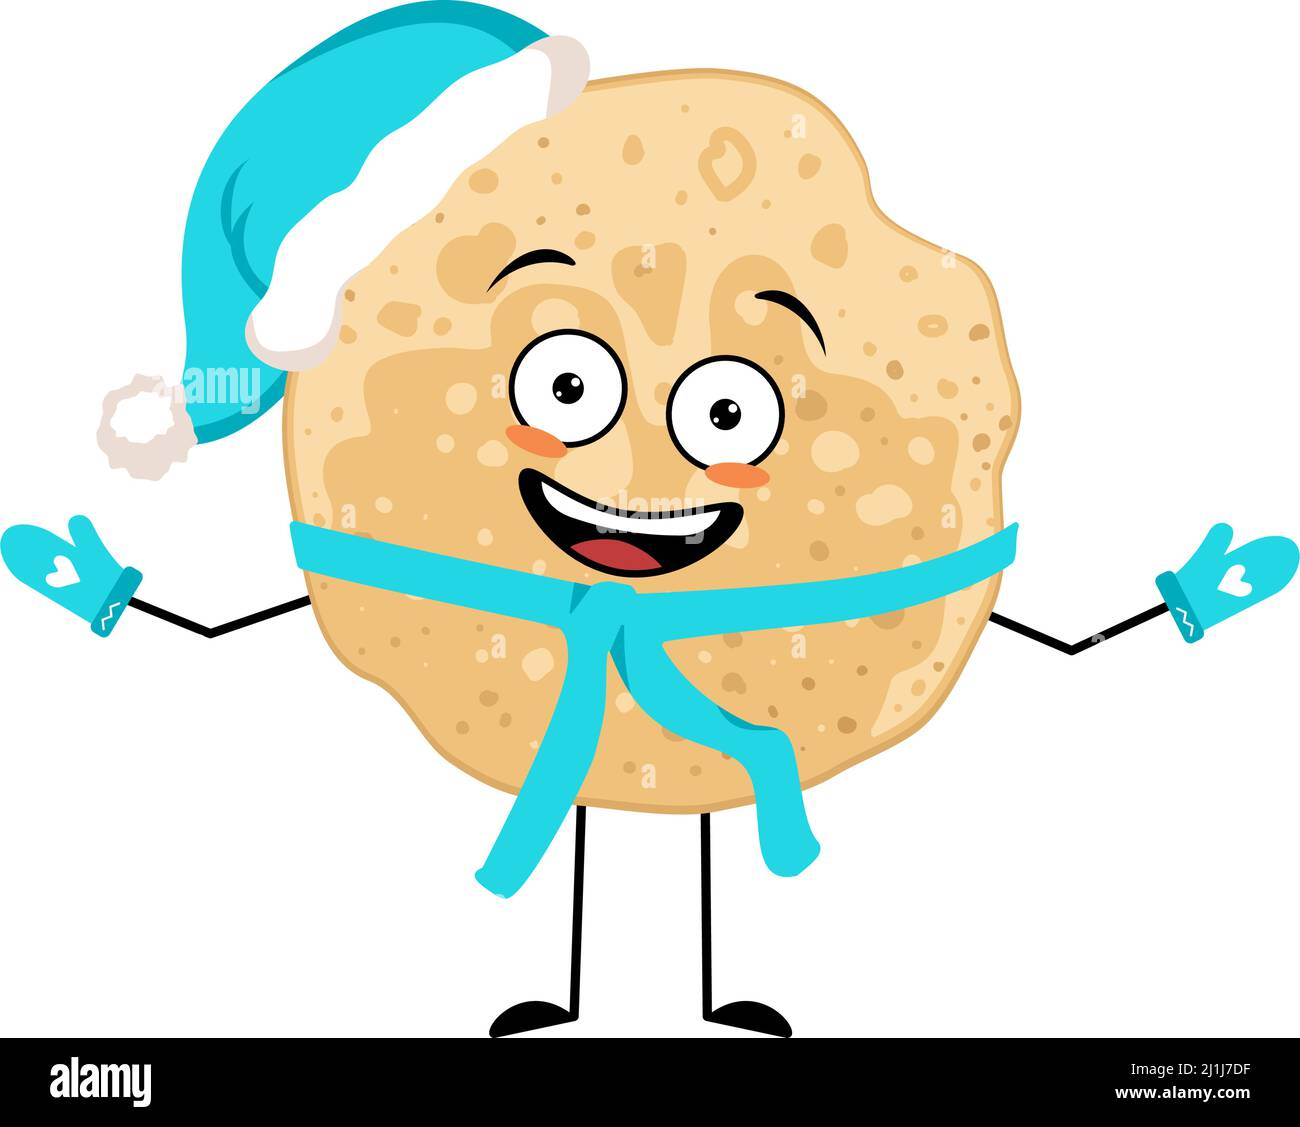 Pancake-Charakter in Weihnachtsmütze mit fröhlicher Emotion, freudigem Gesicht, lächelnden Augen, Armen und Beinen. Backende Person, hausgemachtes Gebäck mit lustigen Ausdruck. Essen Emoticon für Weihnachten oder Maslenitsa Stock Vektor